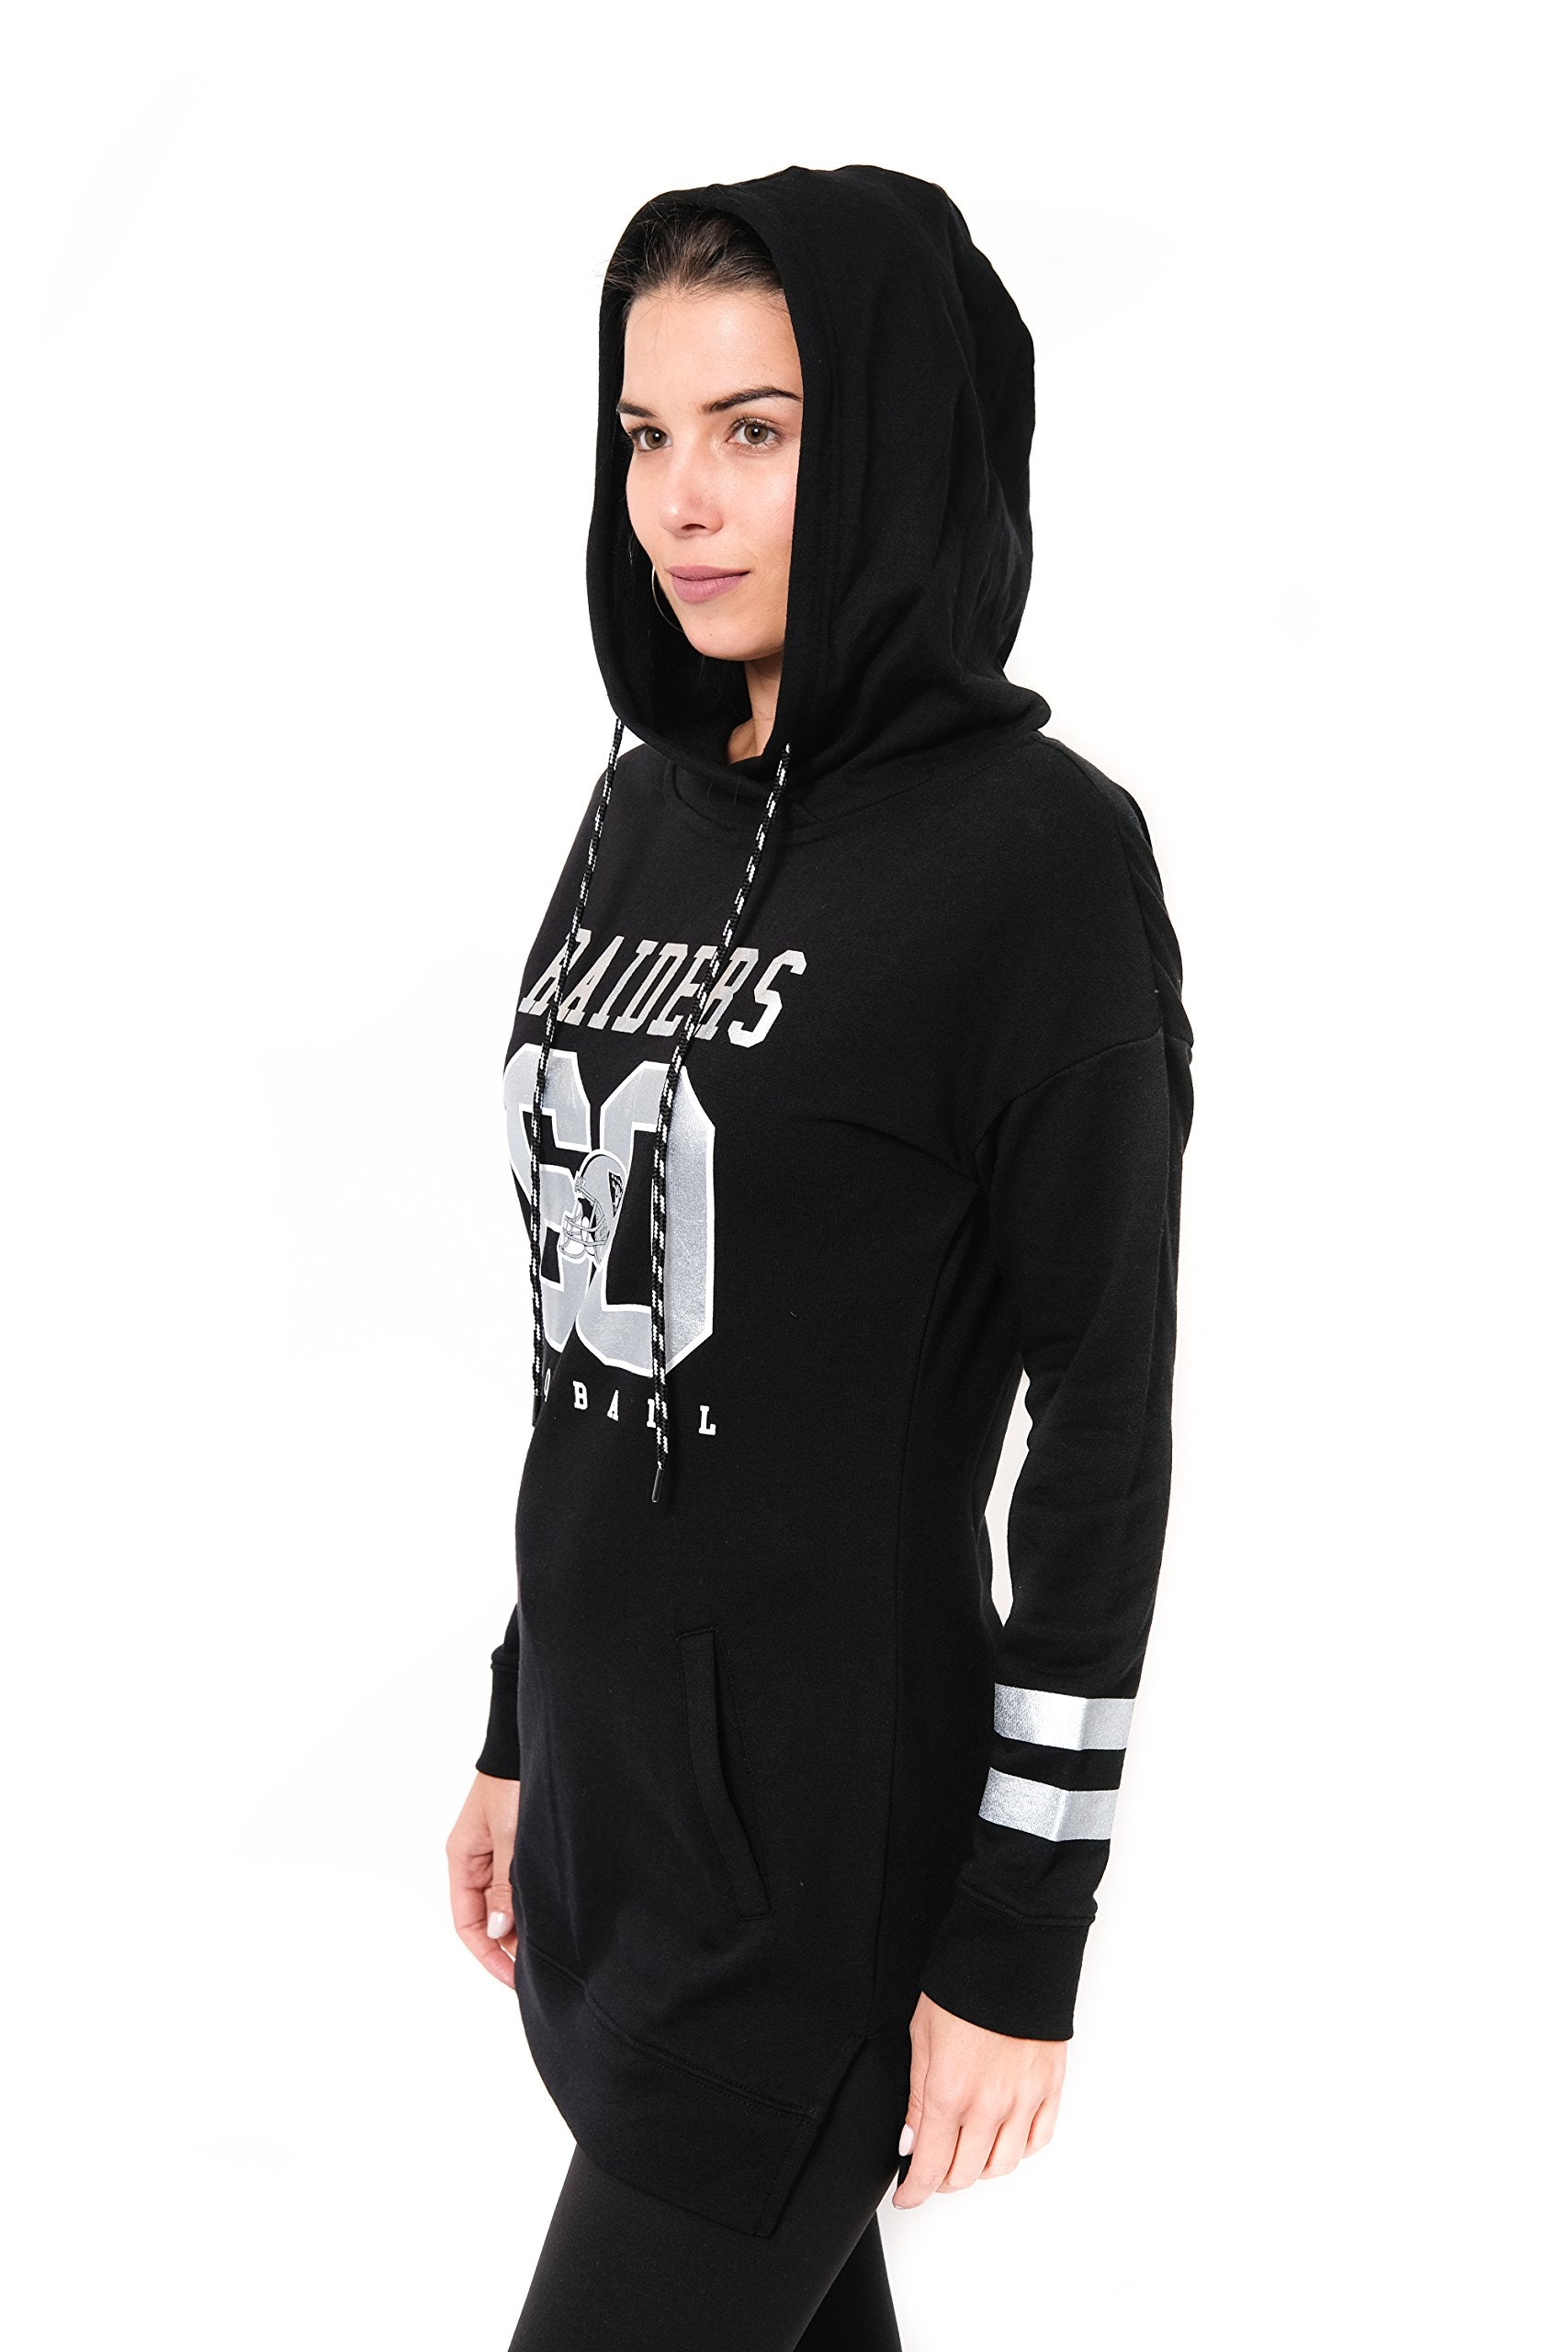 Ultra Game NFL Las Vegas Raiders Womens Soft French Terry Tunic Hoodie Pullover Sweatshirt|Las Vegas Raiders